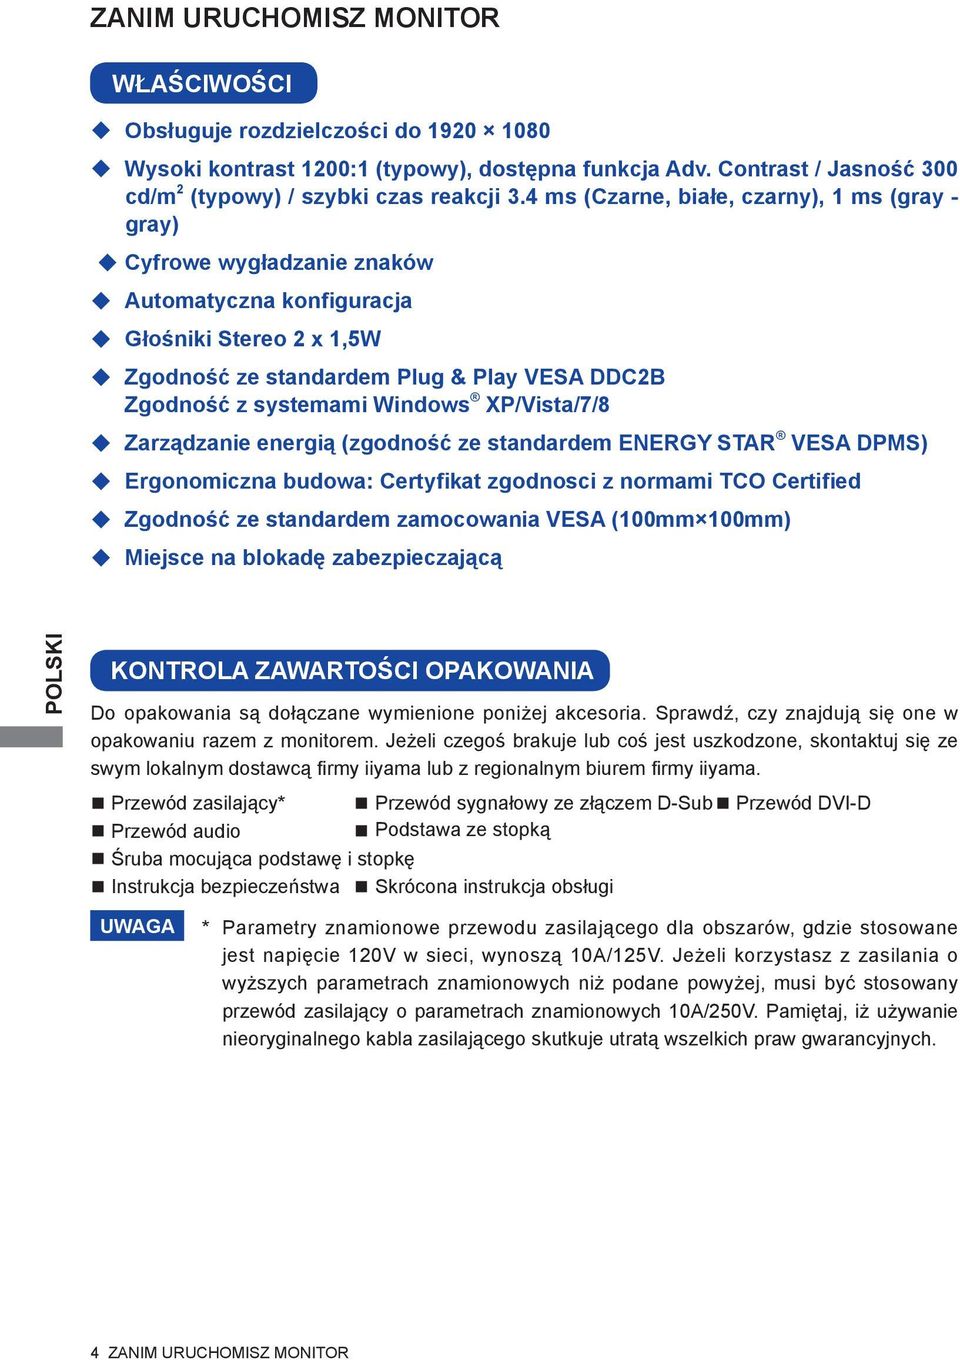 Windows XP/Vista/7/8 Zarządzanie energią (zgodność ze standardem ENERGY STAR VESA DPMS) Ergonomiczna budowa: Certyfikat zgodnosci z normami TCO Certified Zgodność ze standardem zamocowania VESA